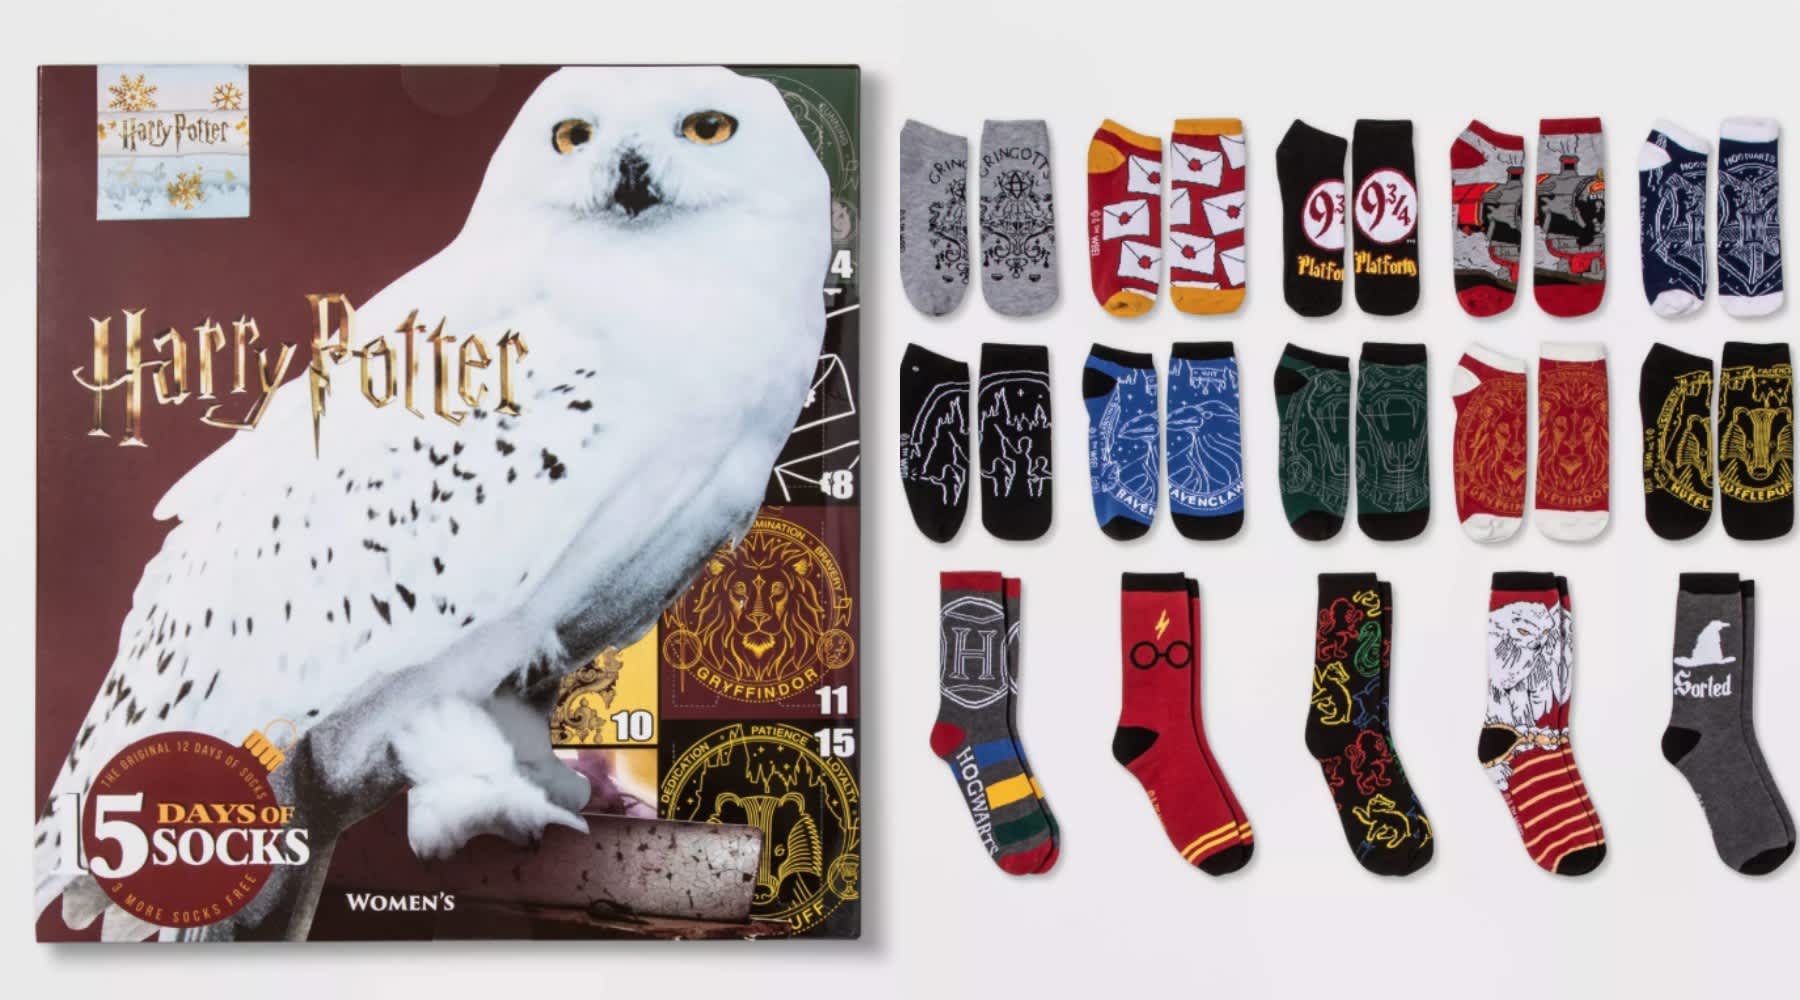 Harry Potter OWL 15 Days of Socks Advent Calendar Christmas Gift